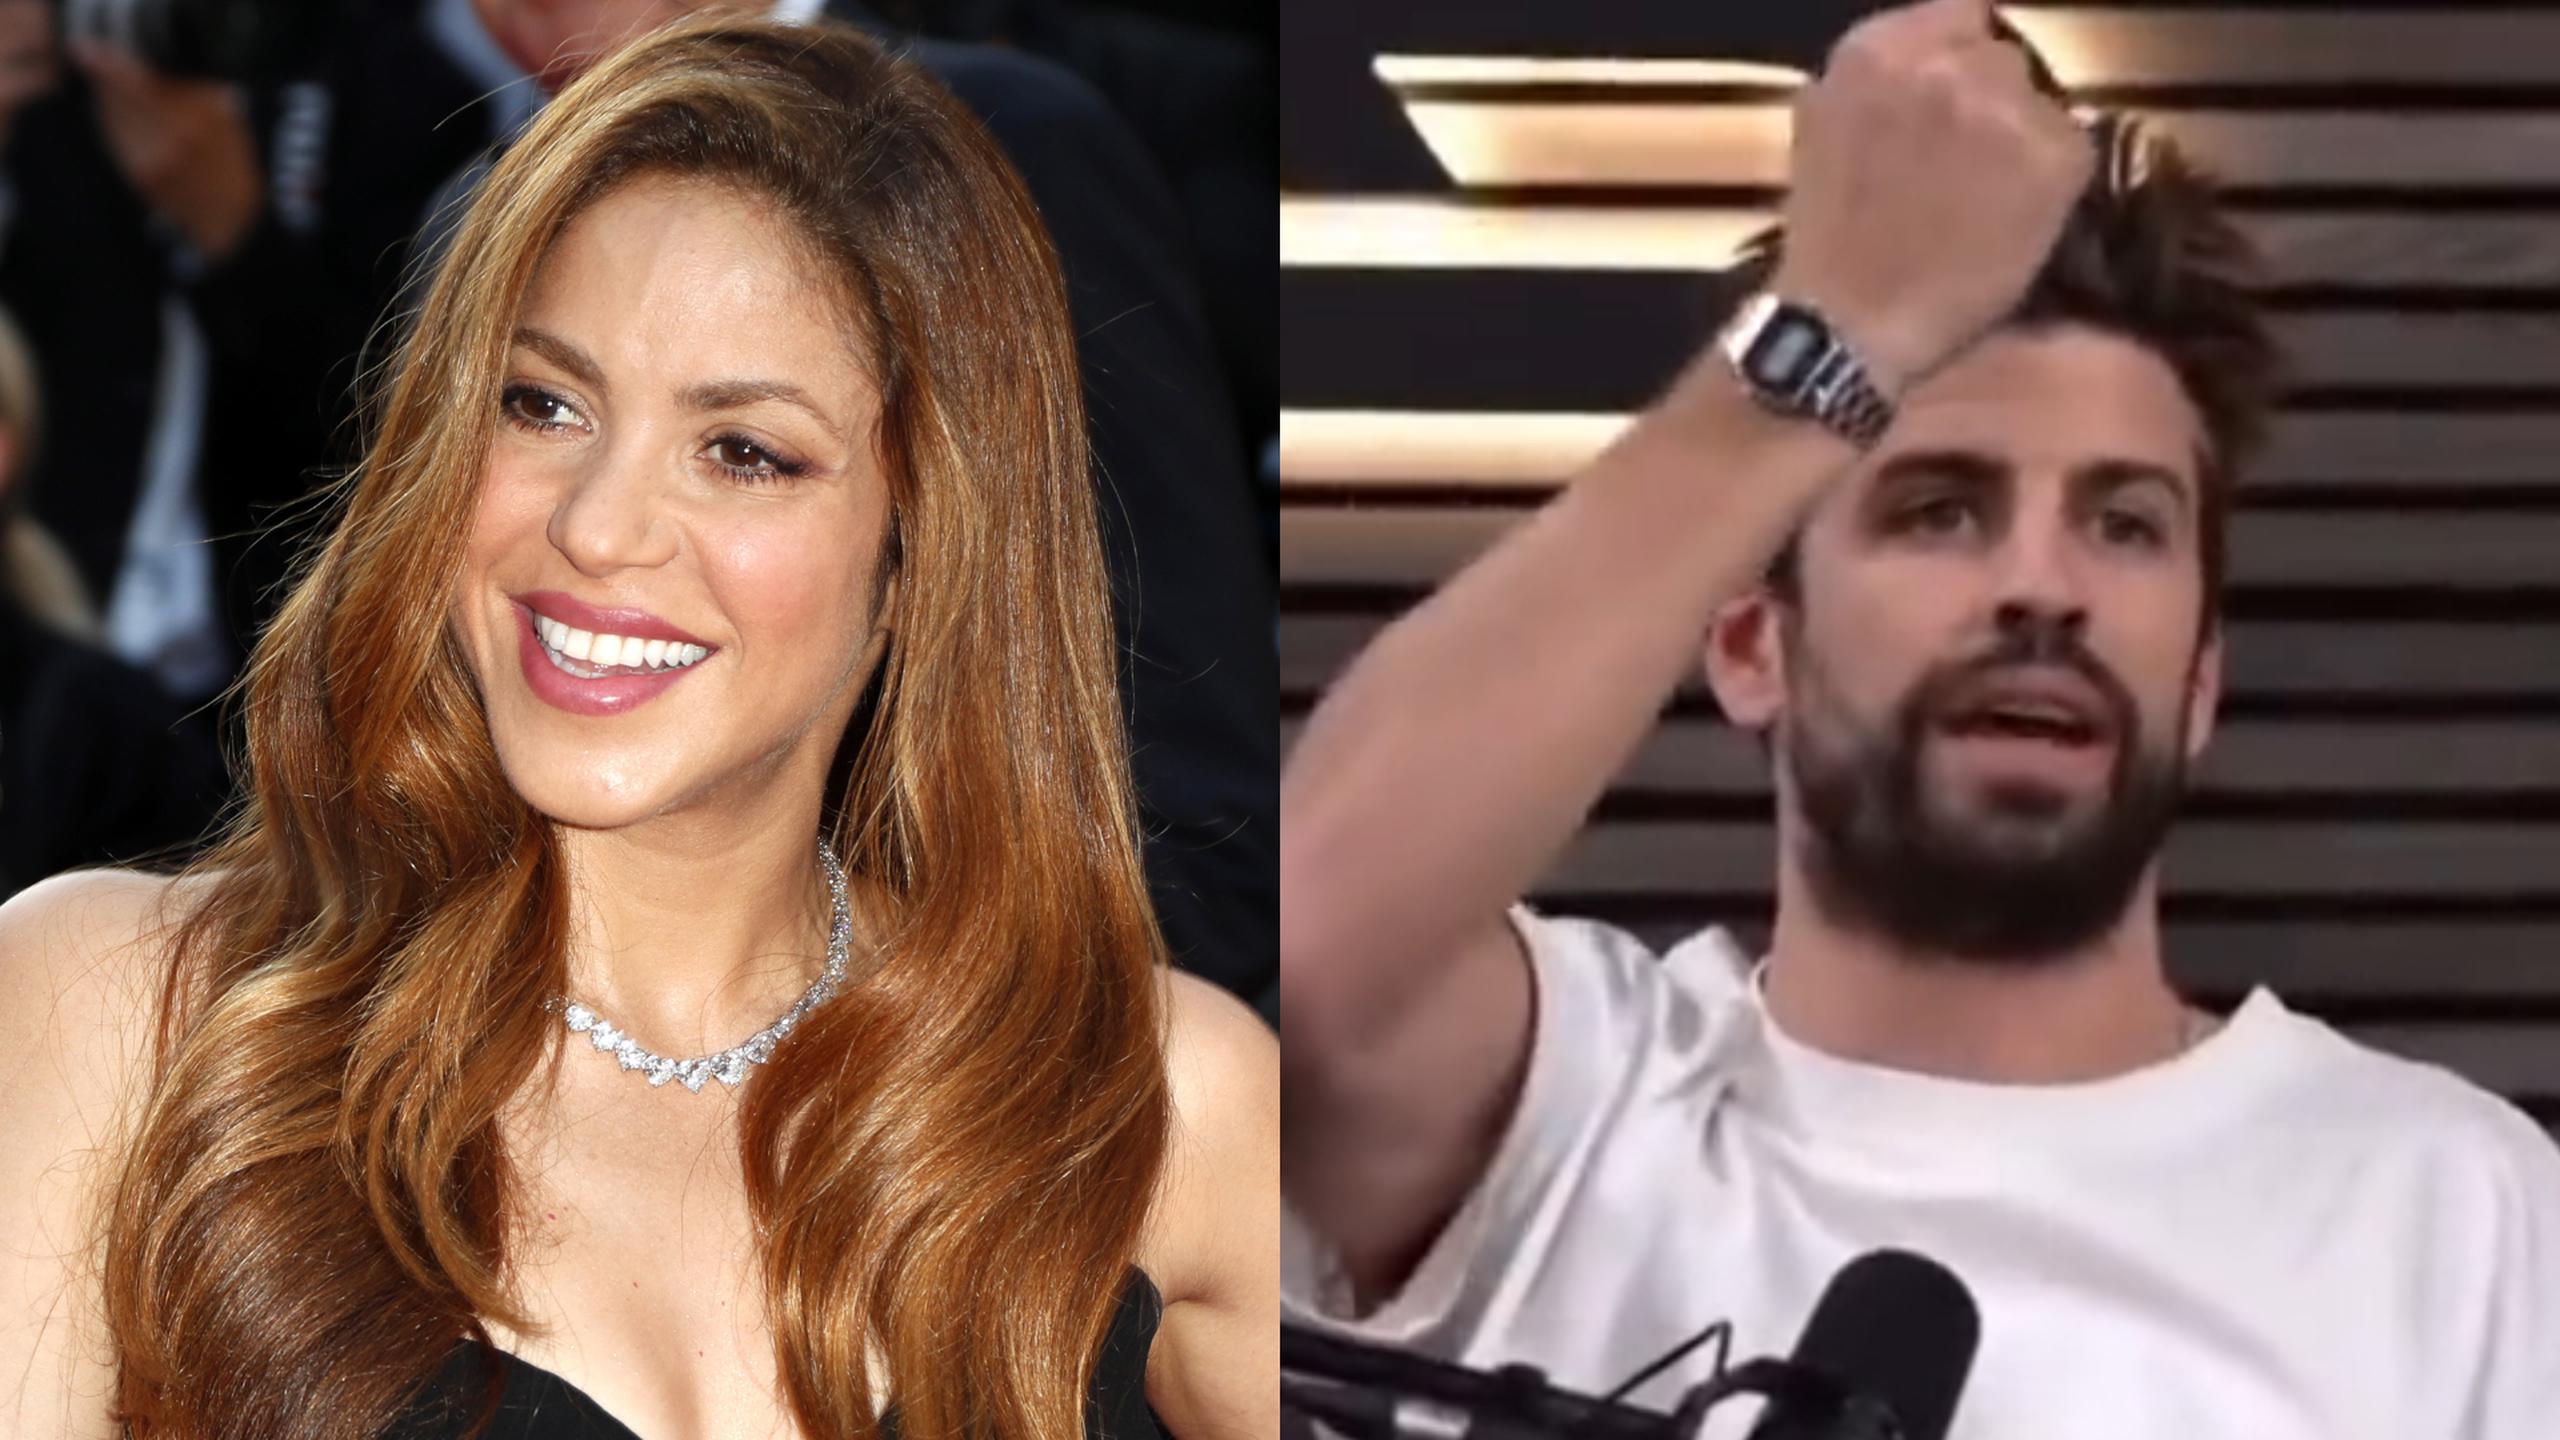 Aunque en la grabación no se menciona el nombre de Shakira, los internautas no han dejado de relacionar la reacción de Piqué con la colombiana.